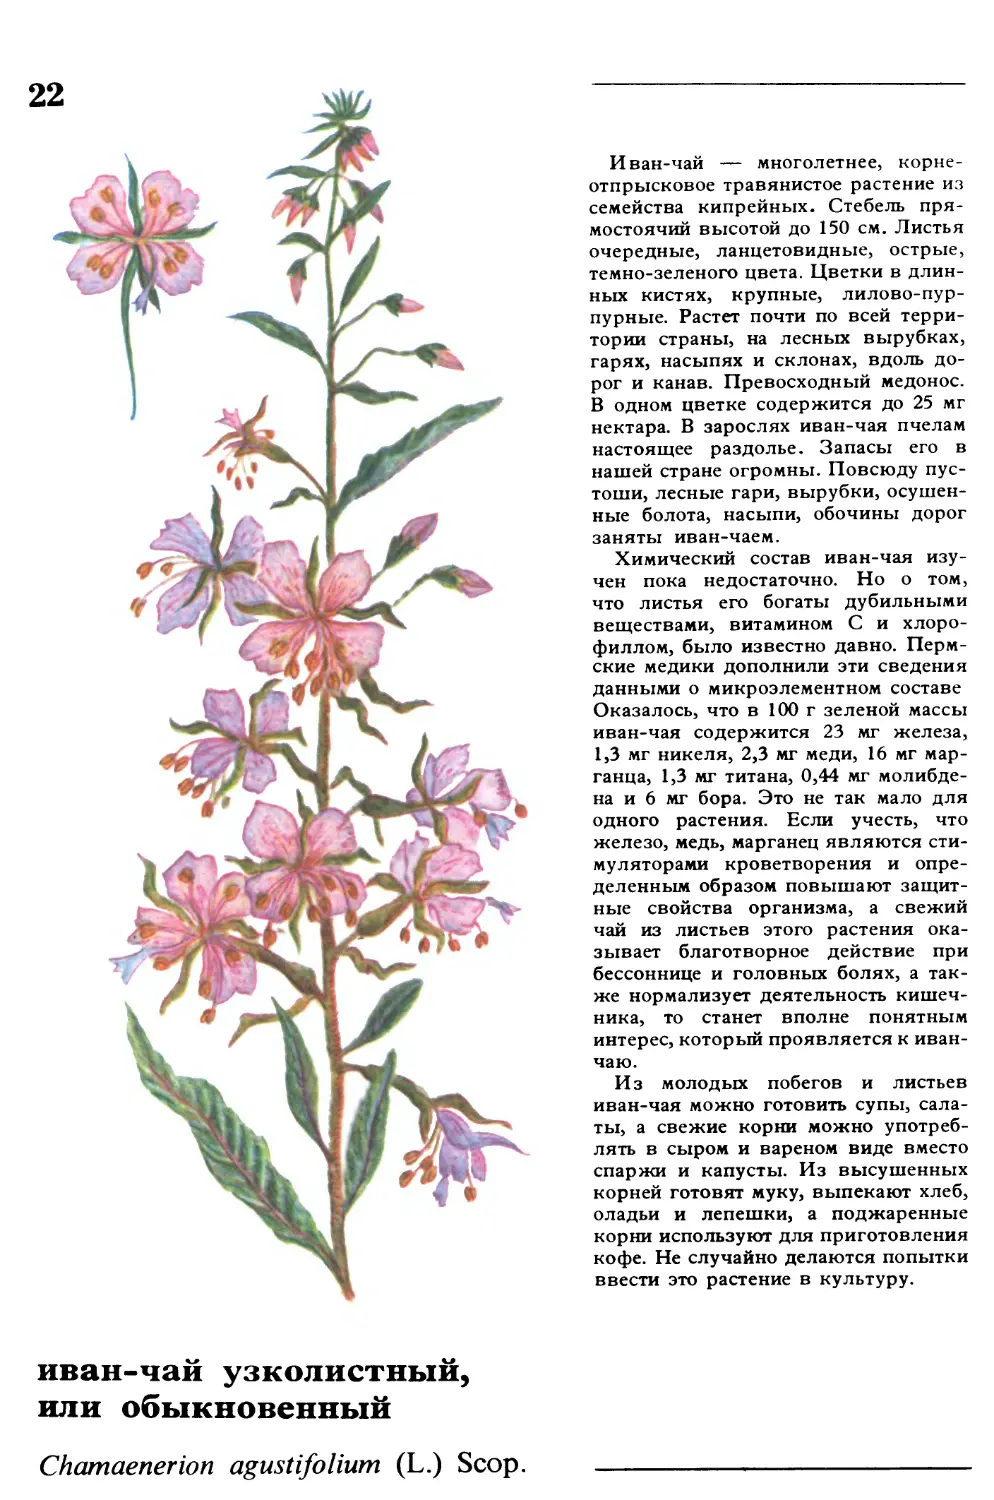 Кипрей род вид отдел. Цветок кипрей узколистный.